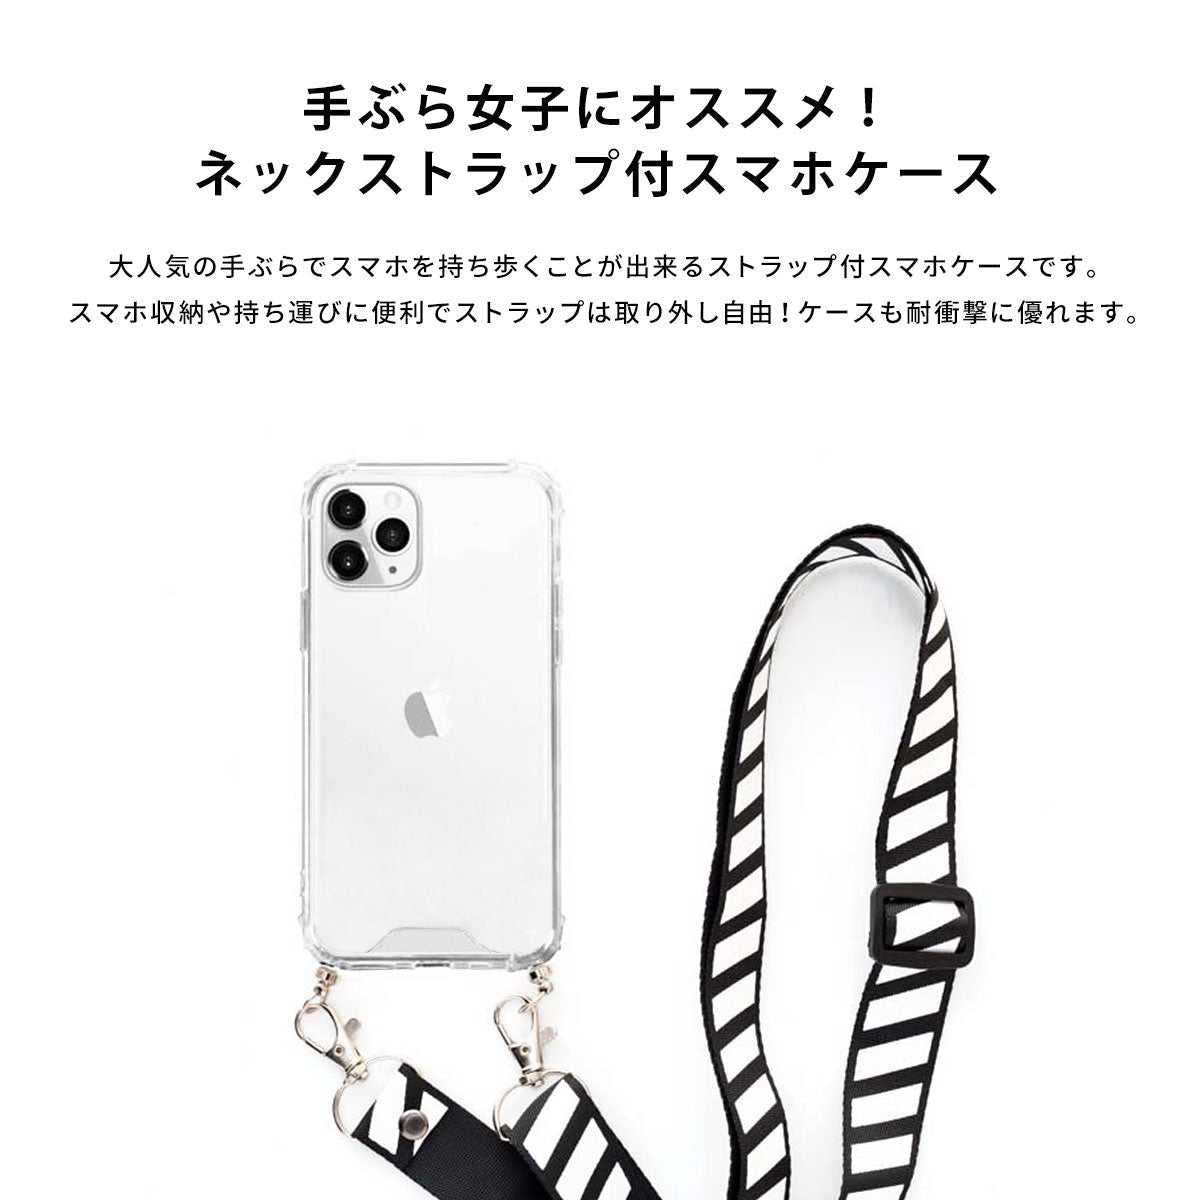 【手ぶら女子に】ネックストラップ スマホケース  iPhone13 iPone12 かわいい おしゃれ  ネックストラップ付き 海 名入れ